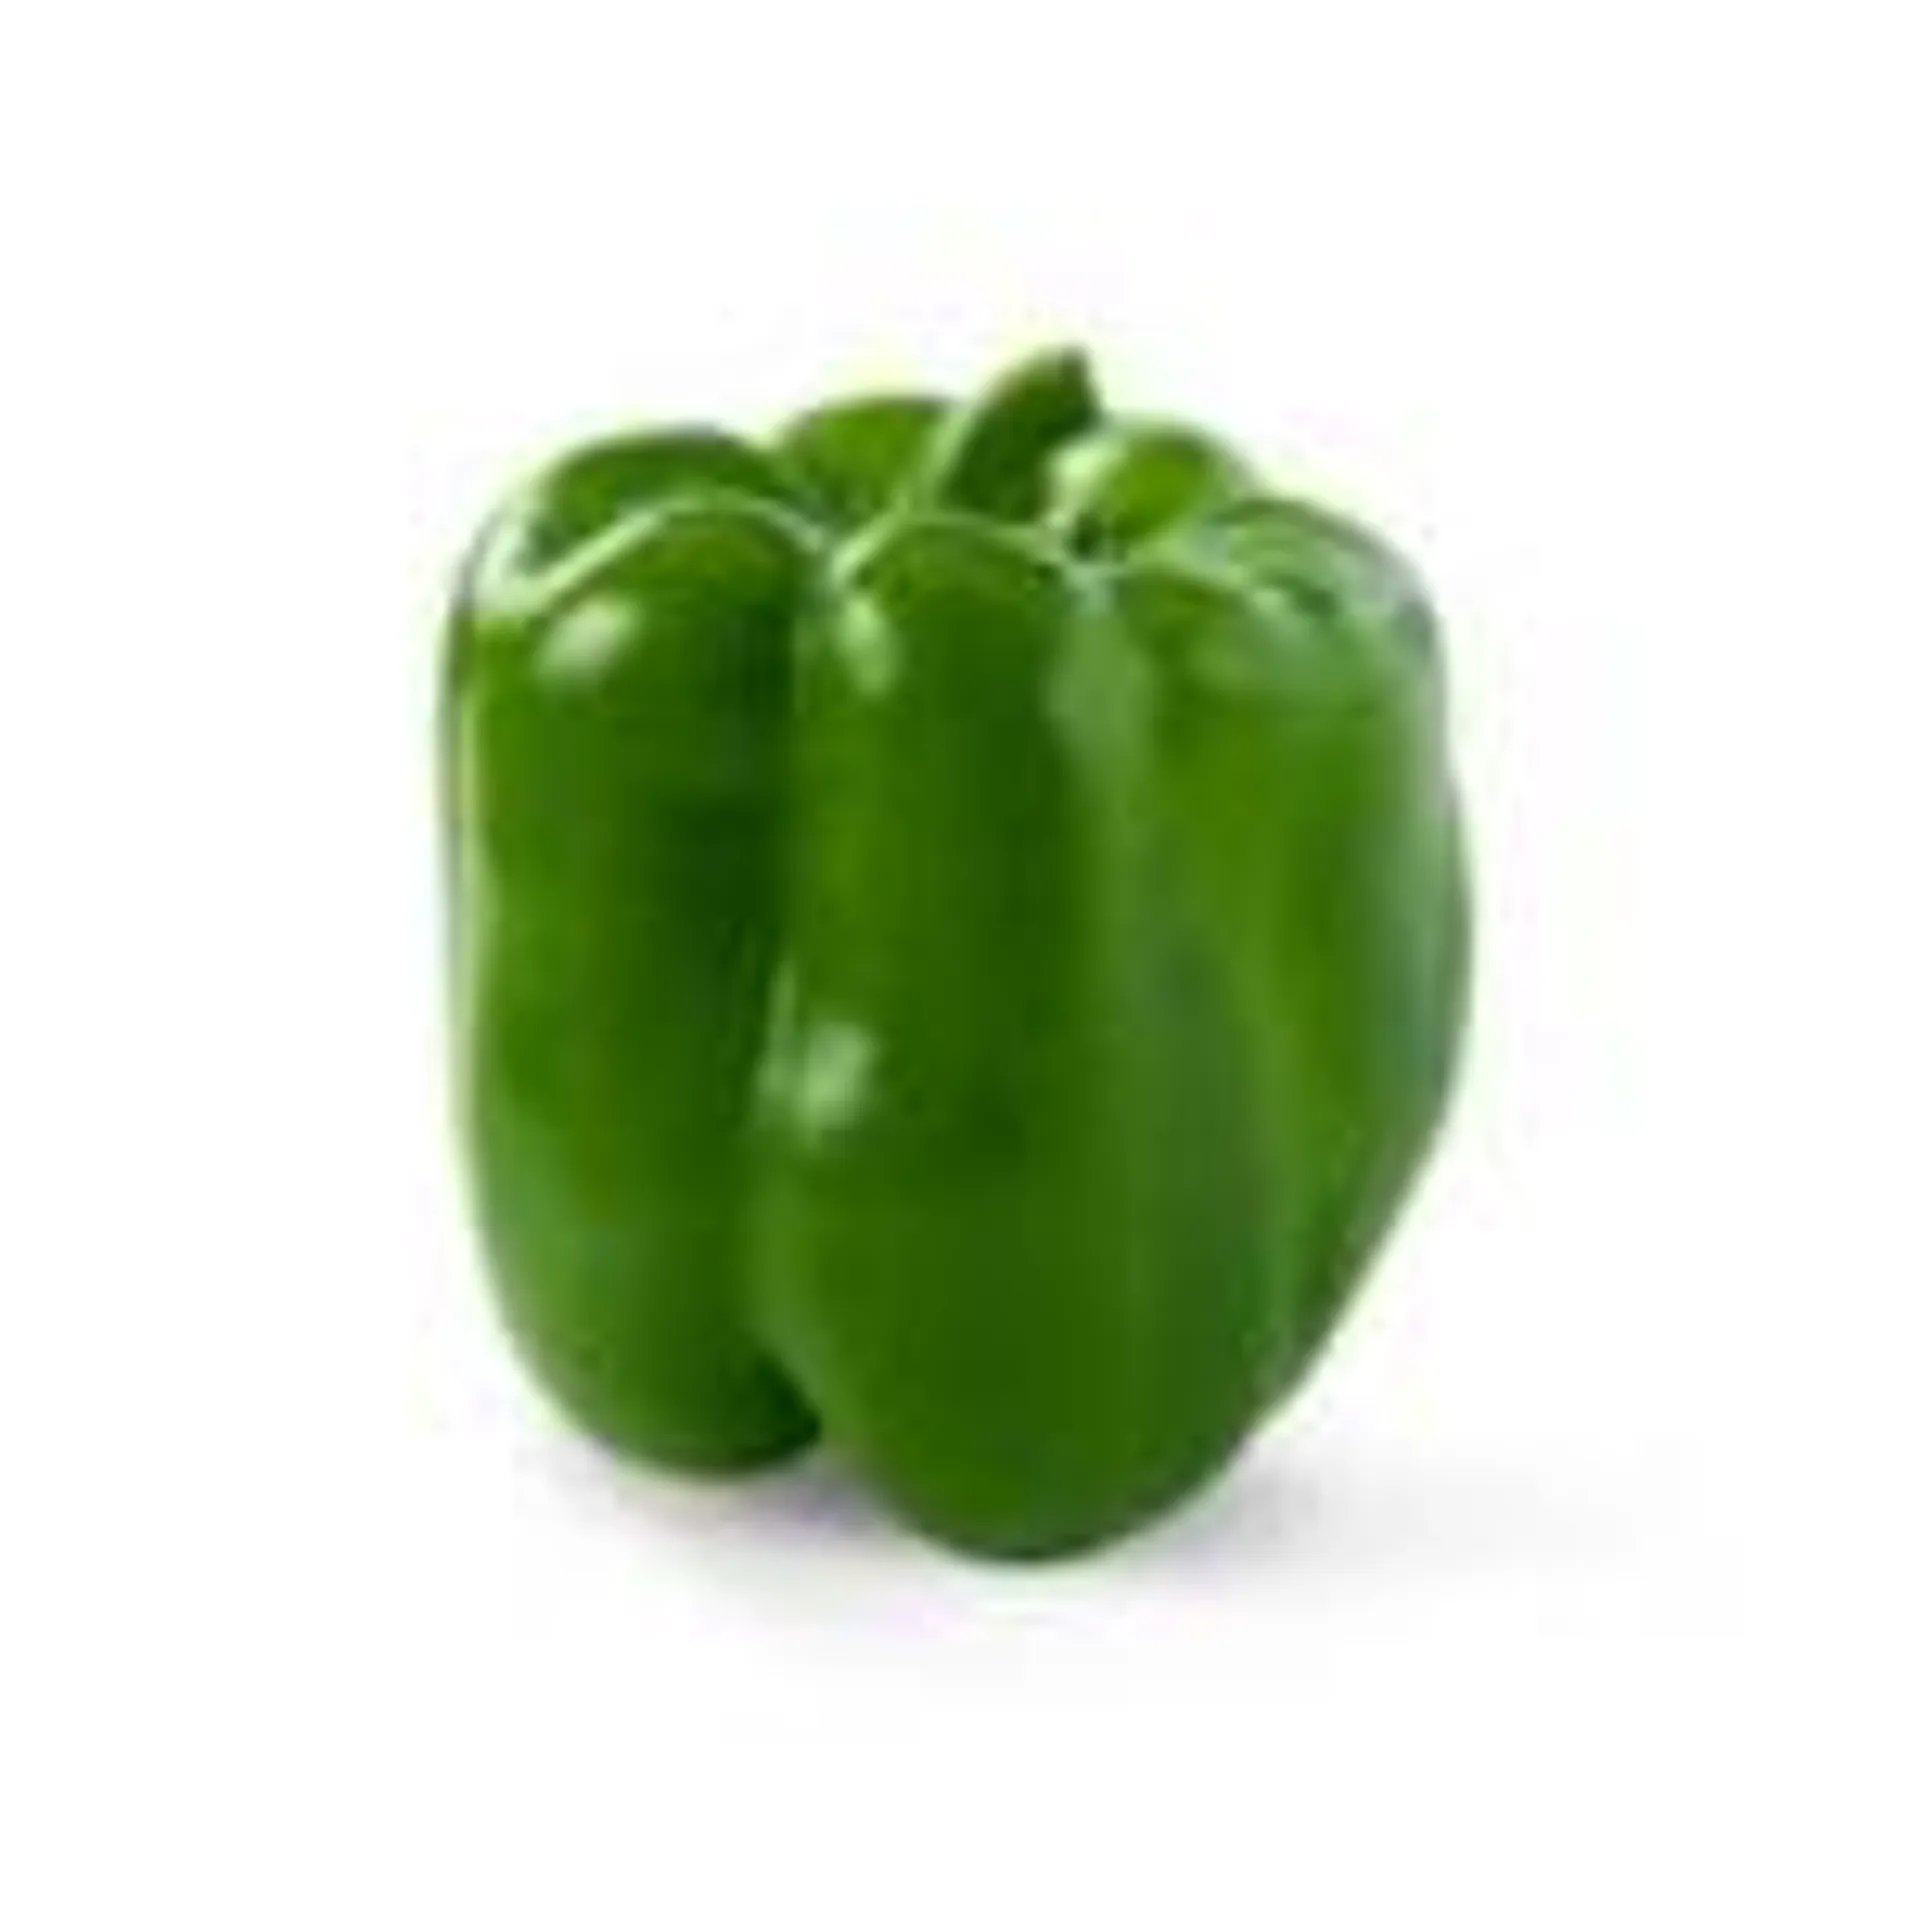 Green Bell Pepper